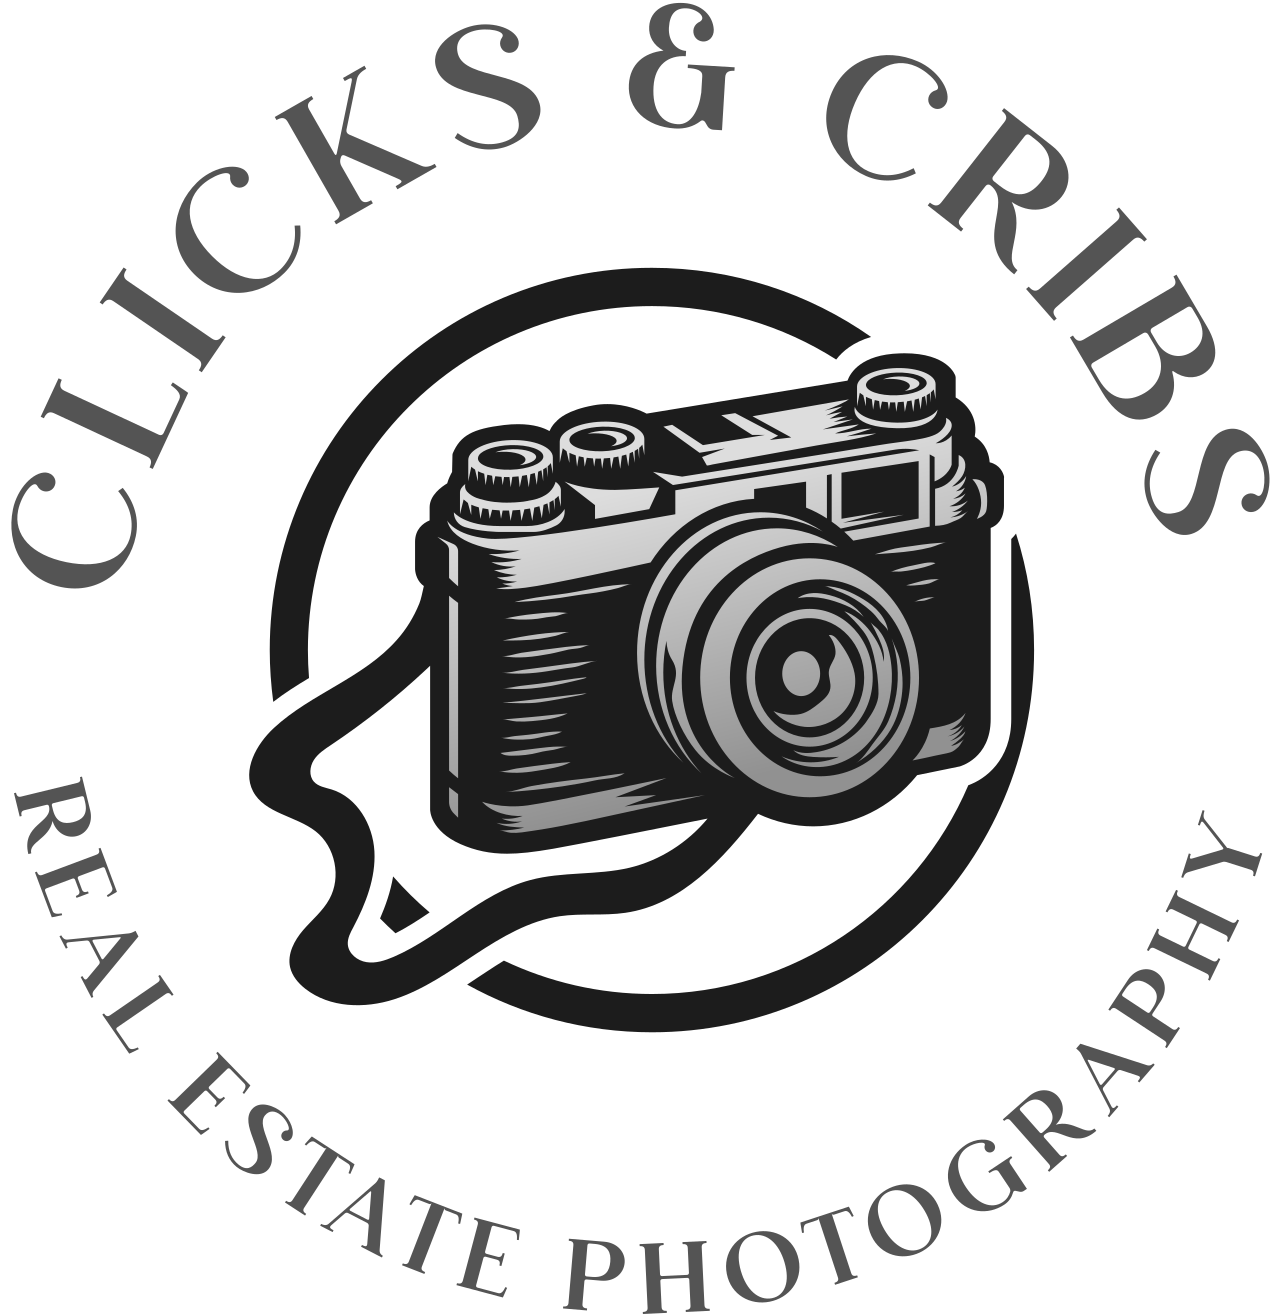 Clicks & Cribs 's logo